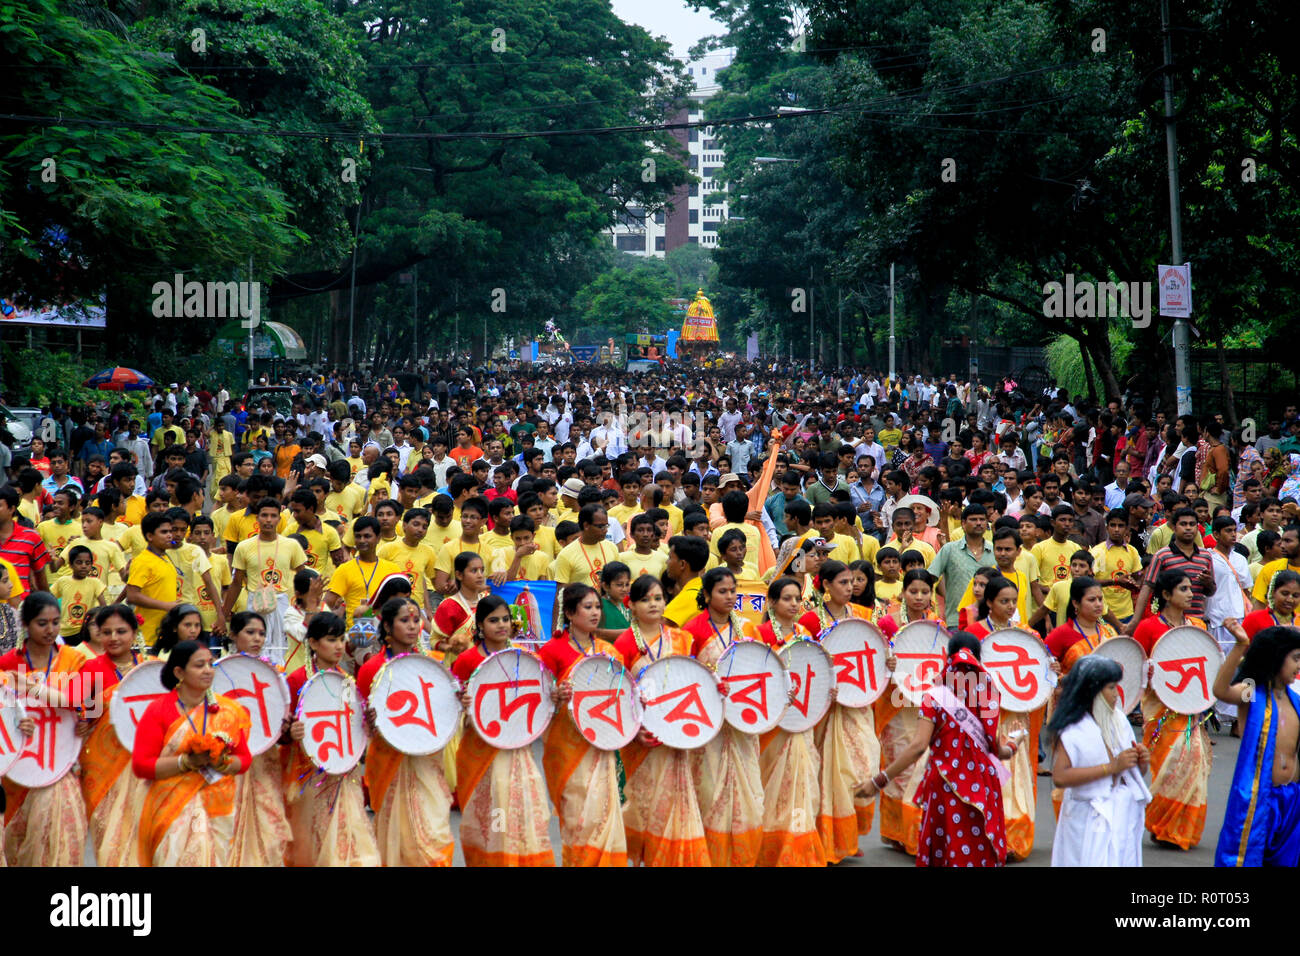 Les dévots hindous célèbrent le Rathajatra annuel Jagannath (défilé de char), l'un des plus grands festivals religieux des Hindous. Dhaka, Bangladesh Banque D'Images